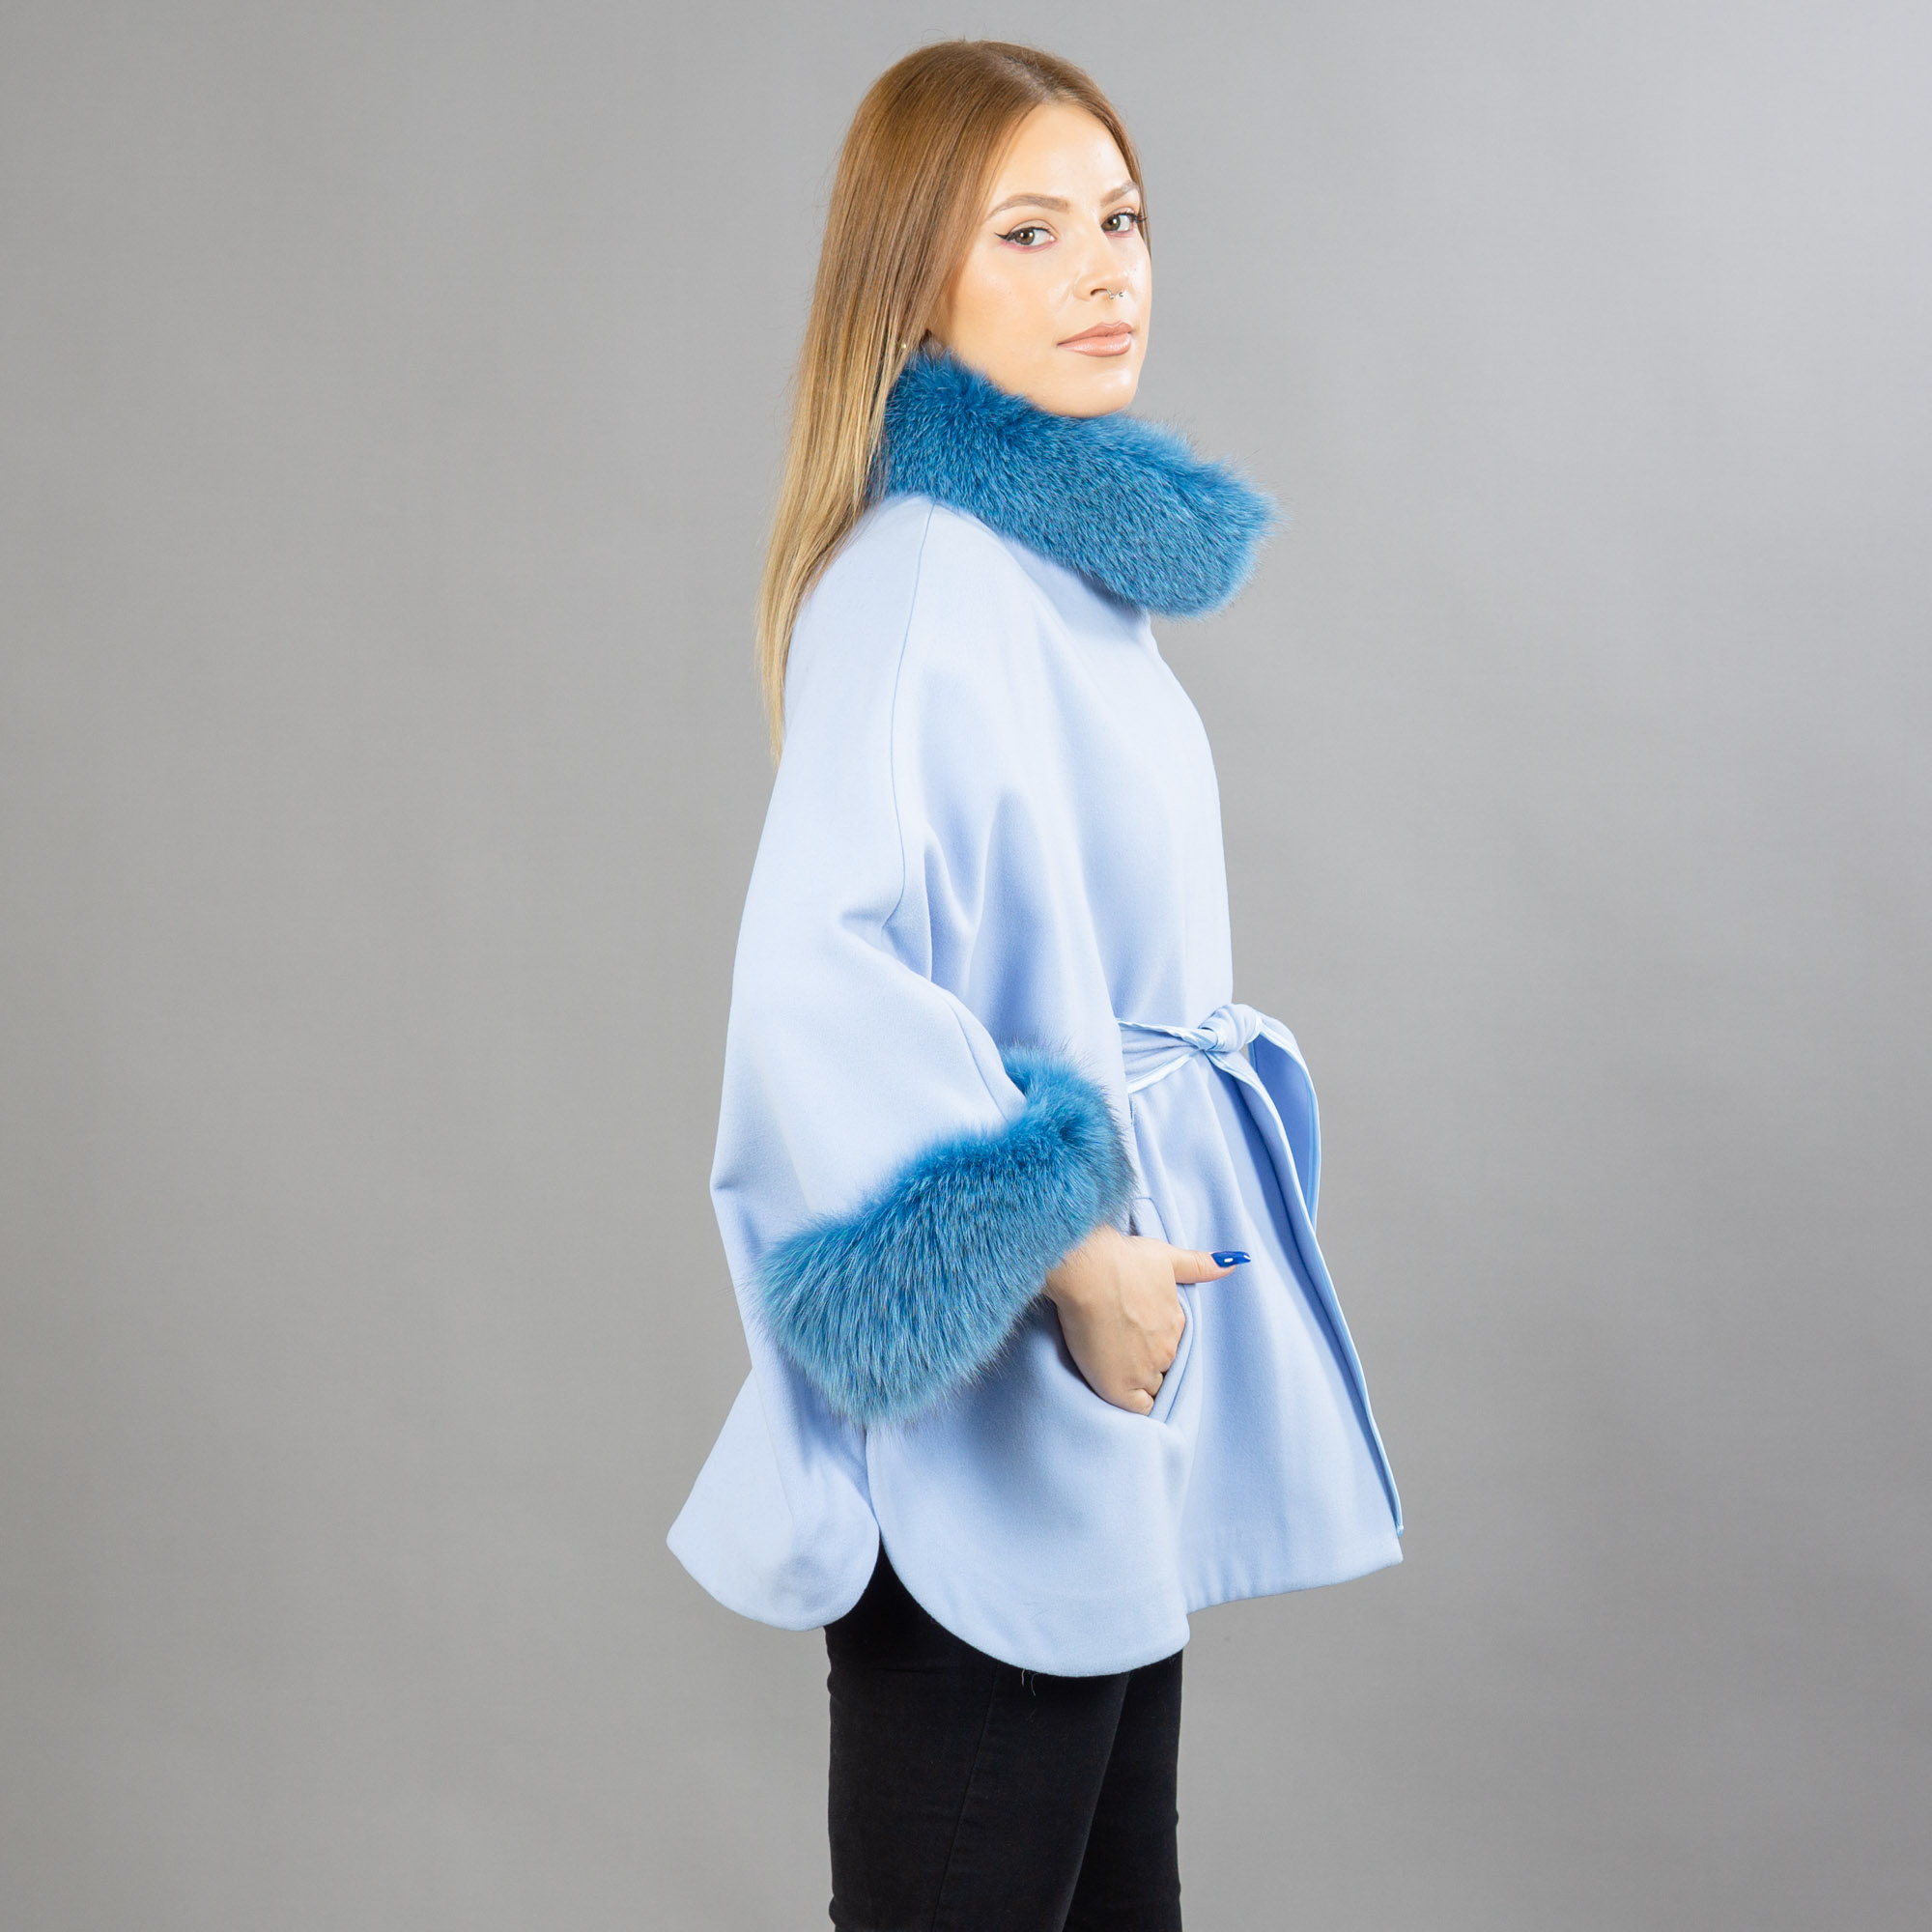 Blue cashmere cape with fox fur details